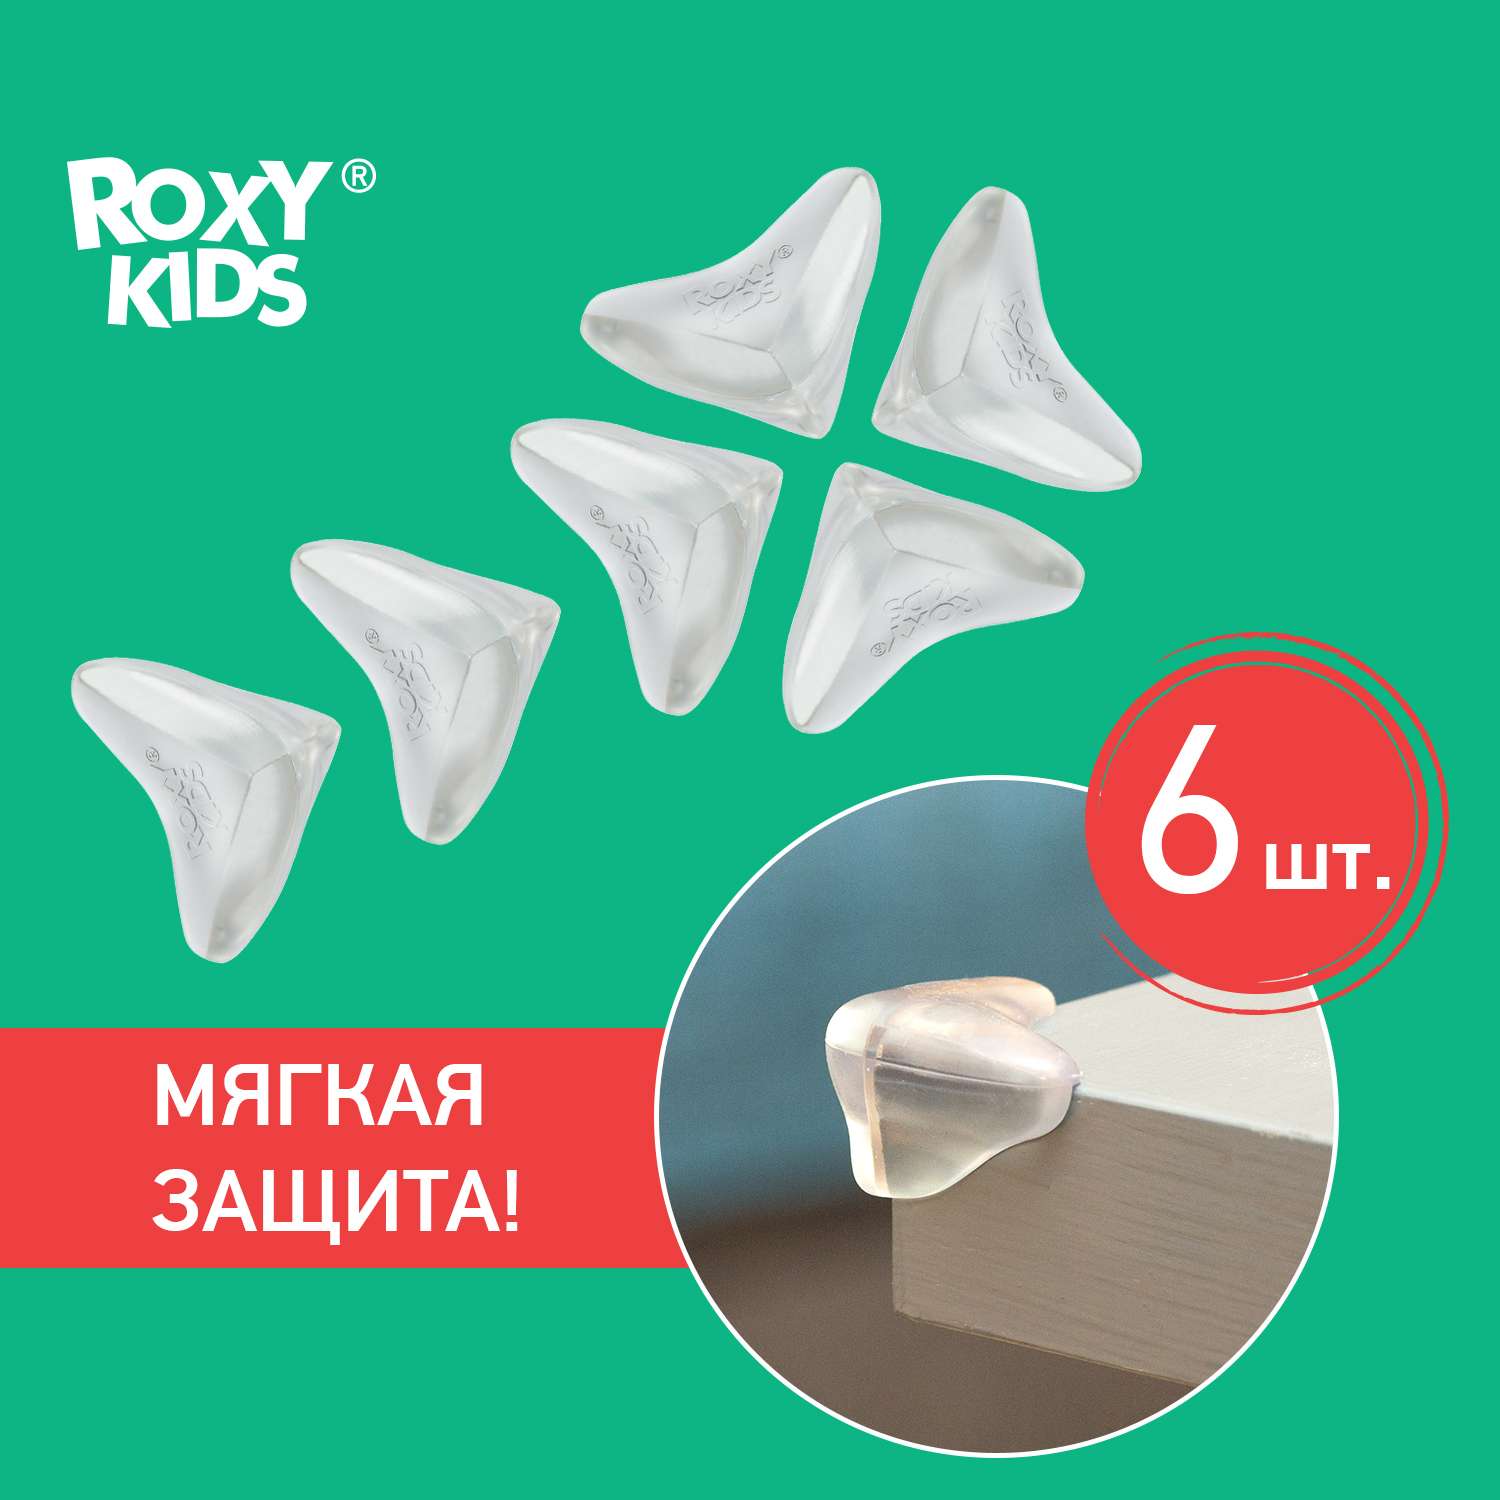 Накладки защитные клейкие ROXY-KIDS для дома на углы стола 6 шт - фото 2